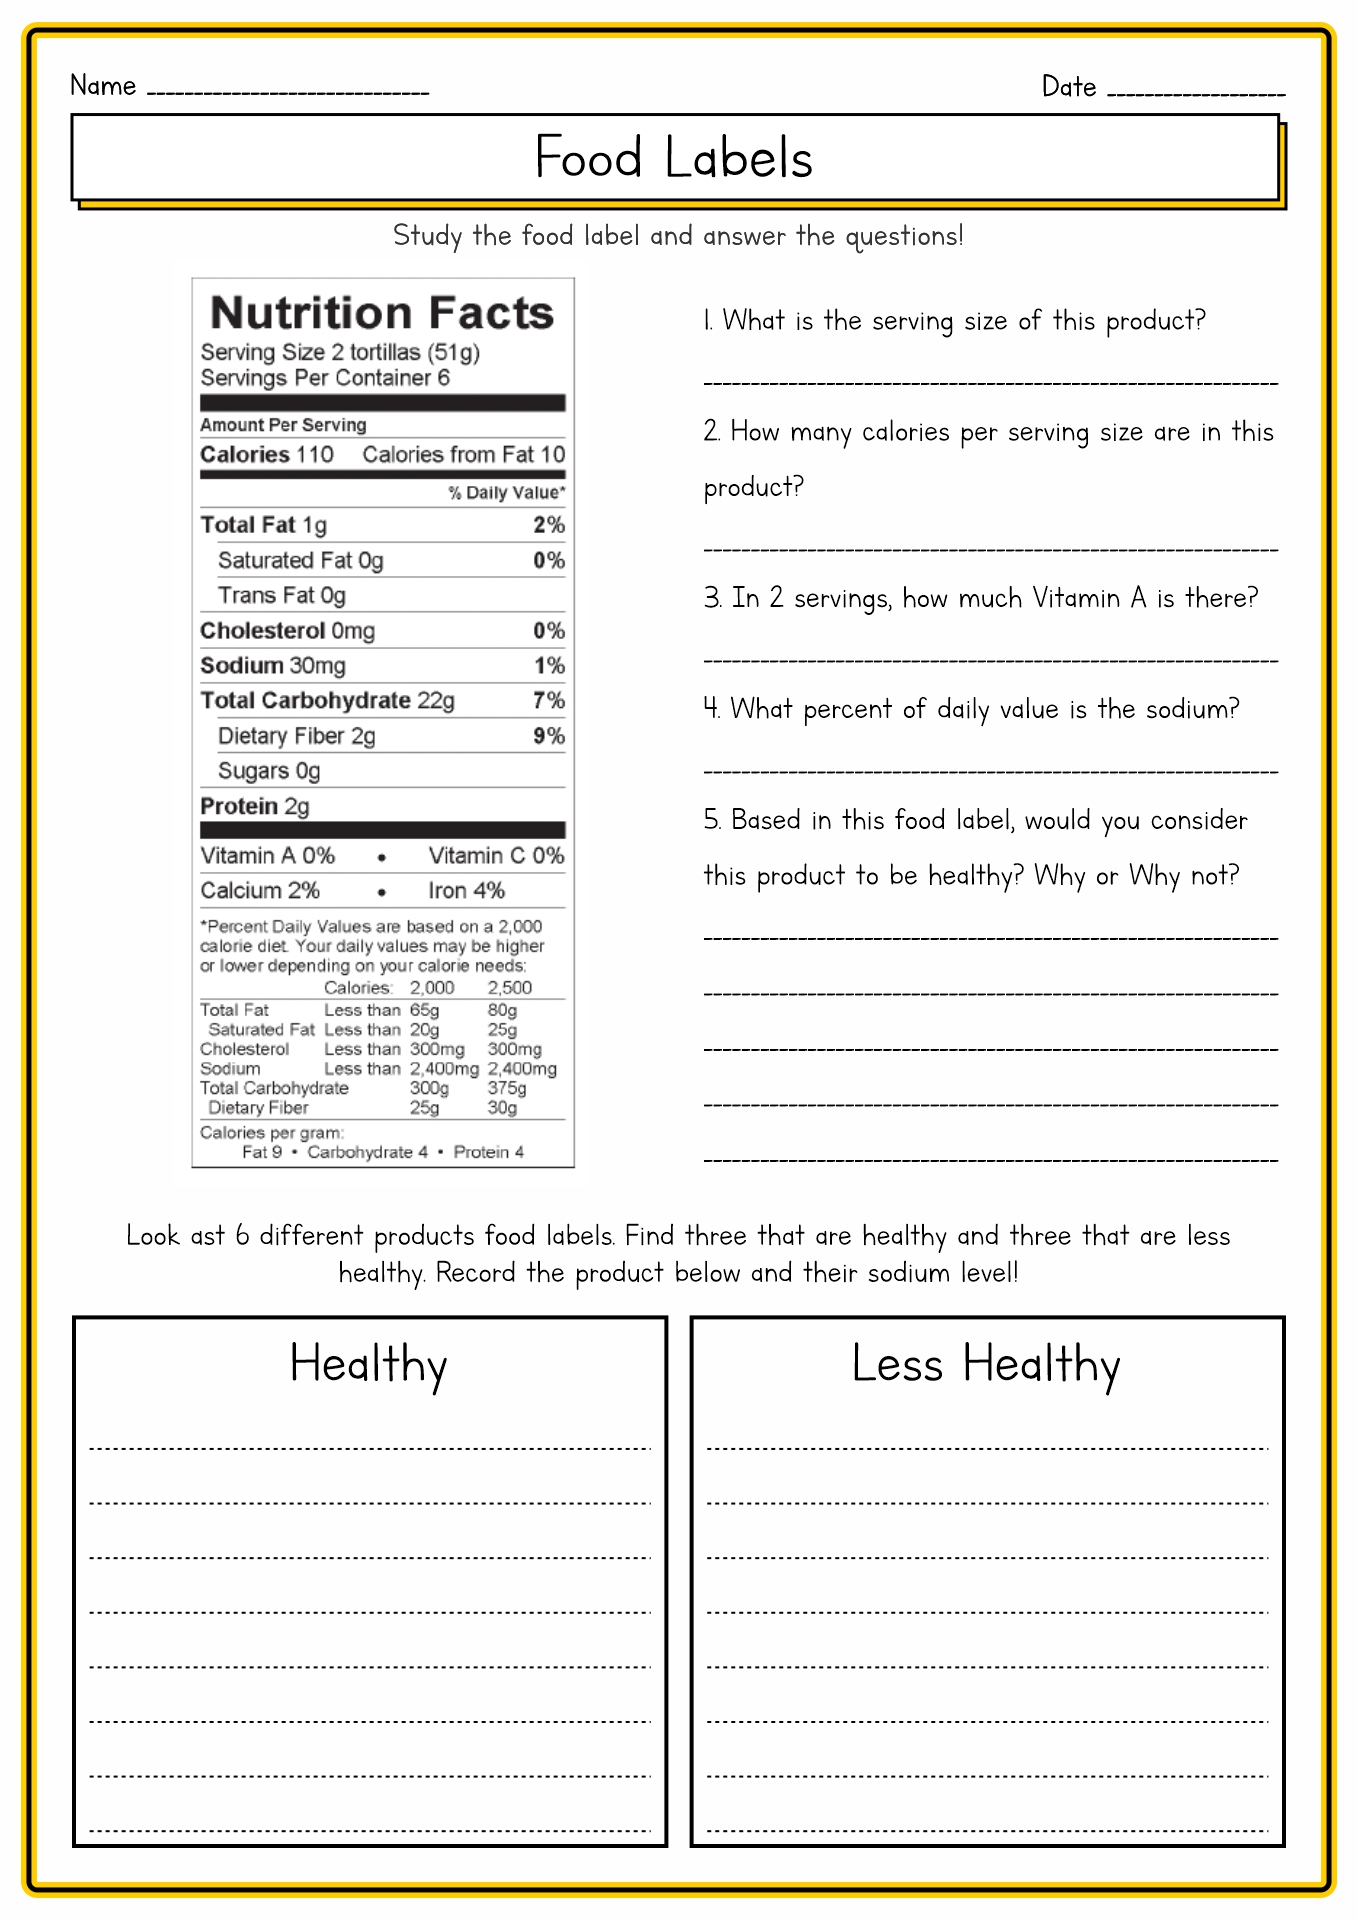 free-printable-food-label-worksheets